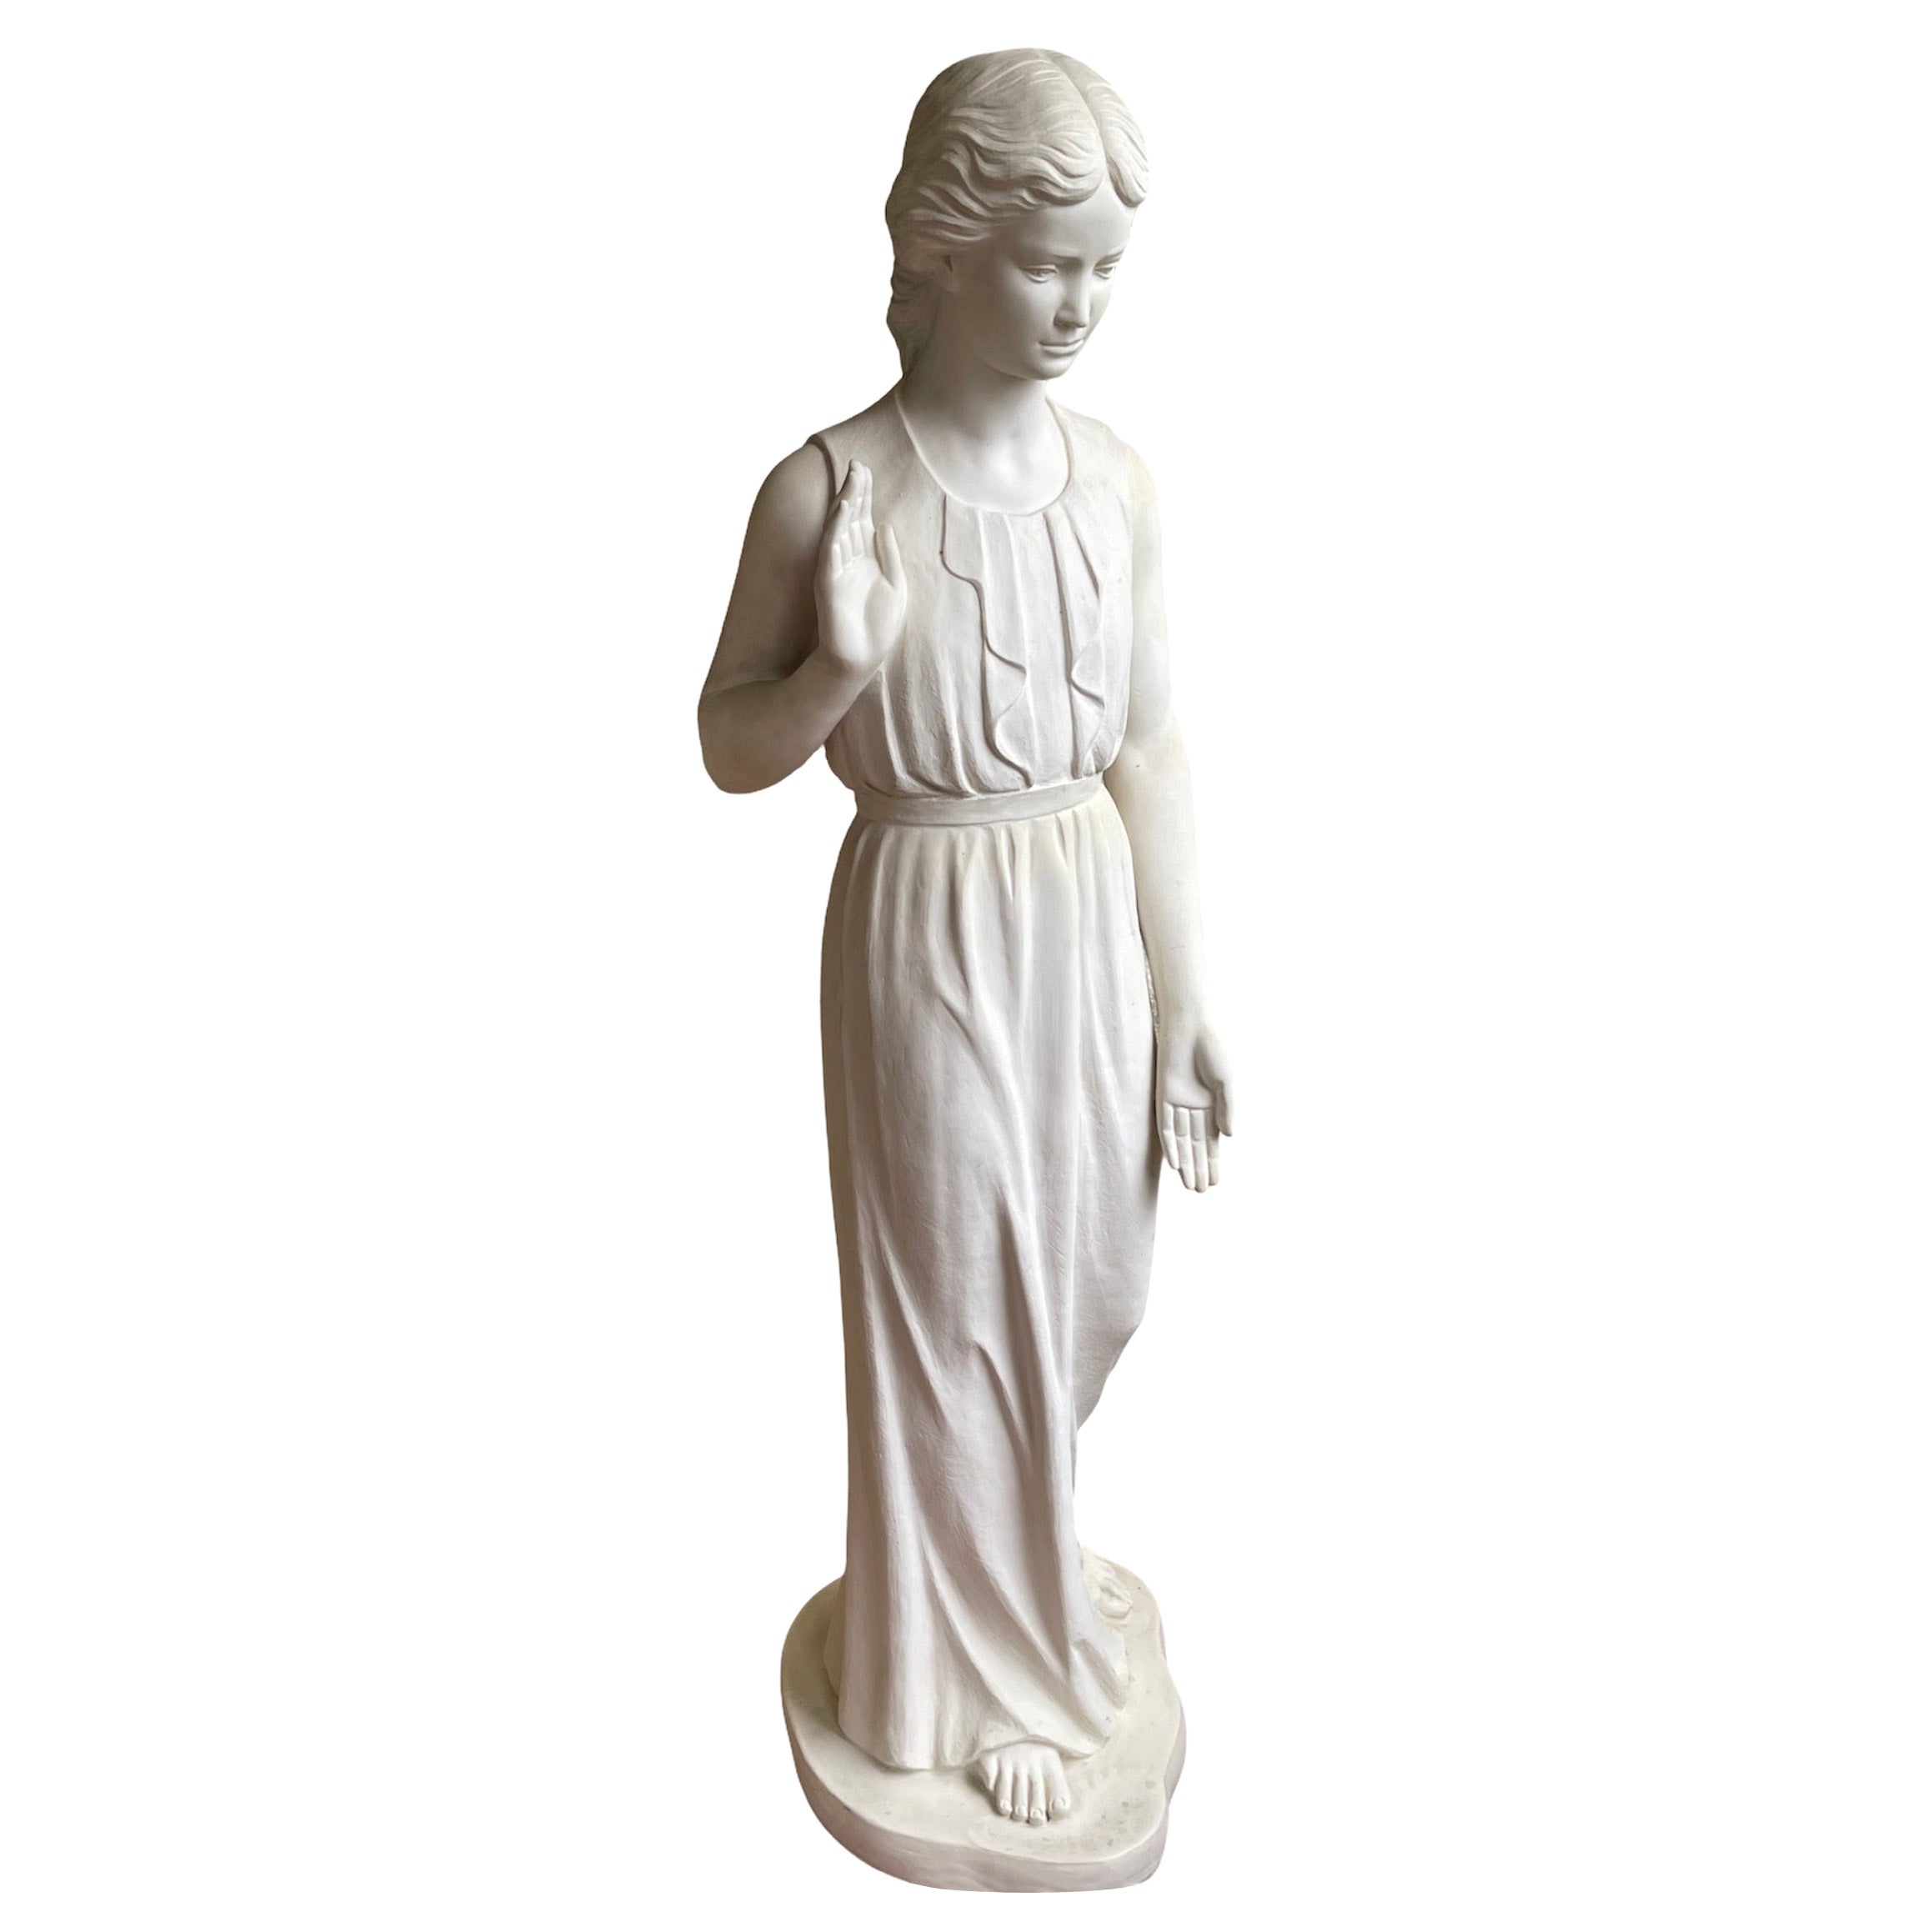 Garten-Skulptur eines jungen Mädchens aus gegossenem Marmor in Lebensgröße, Bonded oder Cold Cast